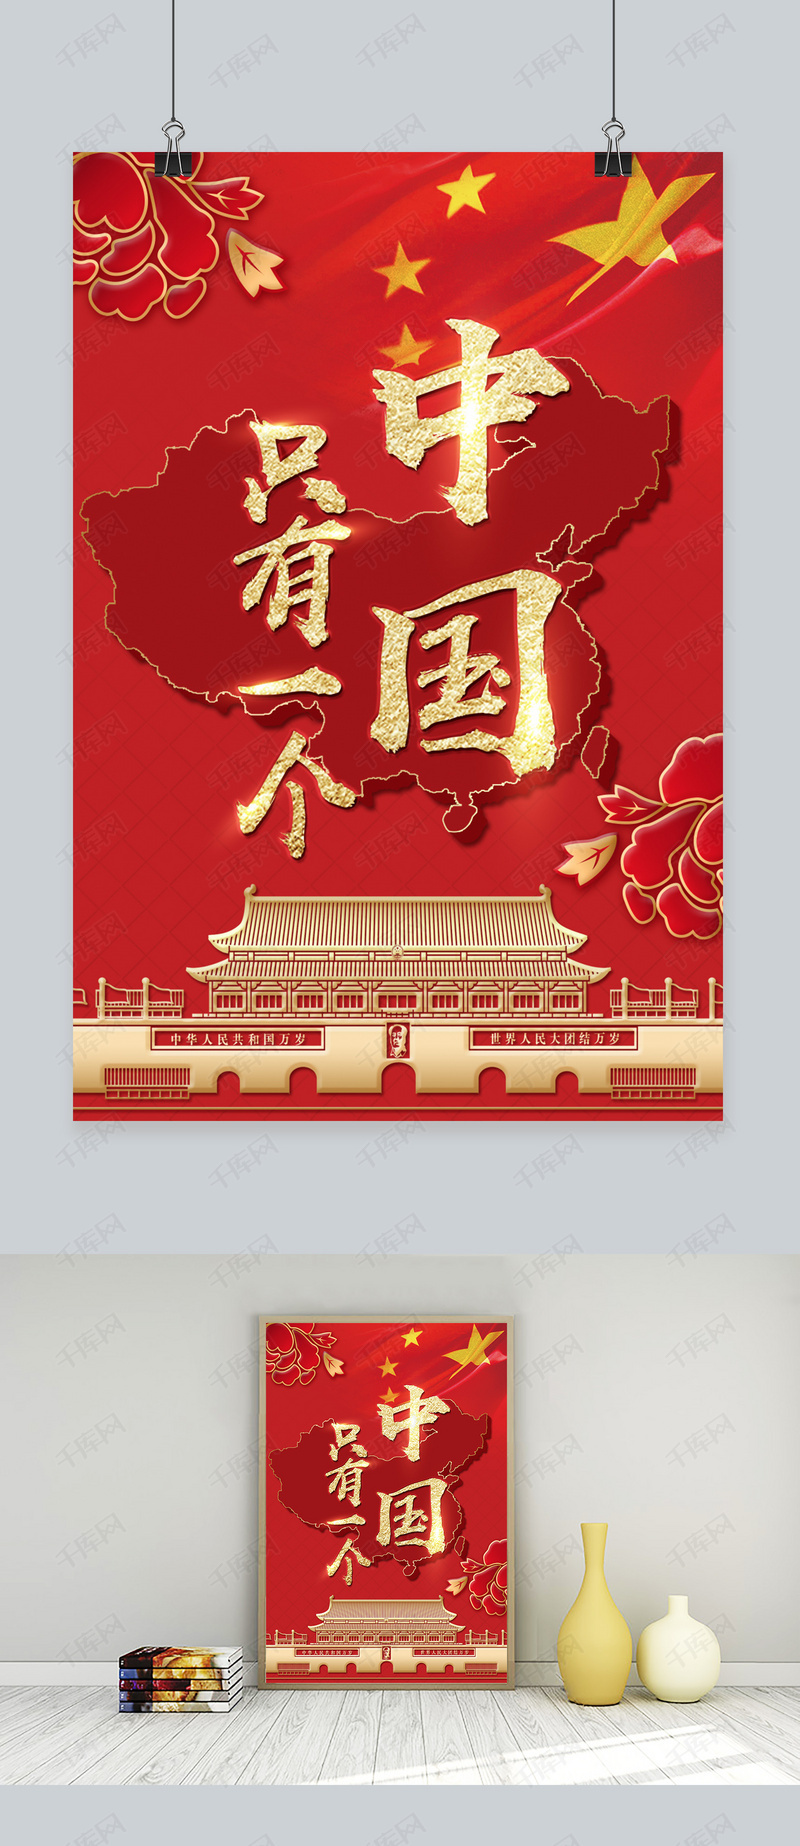 人物画像及字体仅供参考禁止商用 千库原创  中国  红色  只有一个